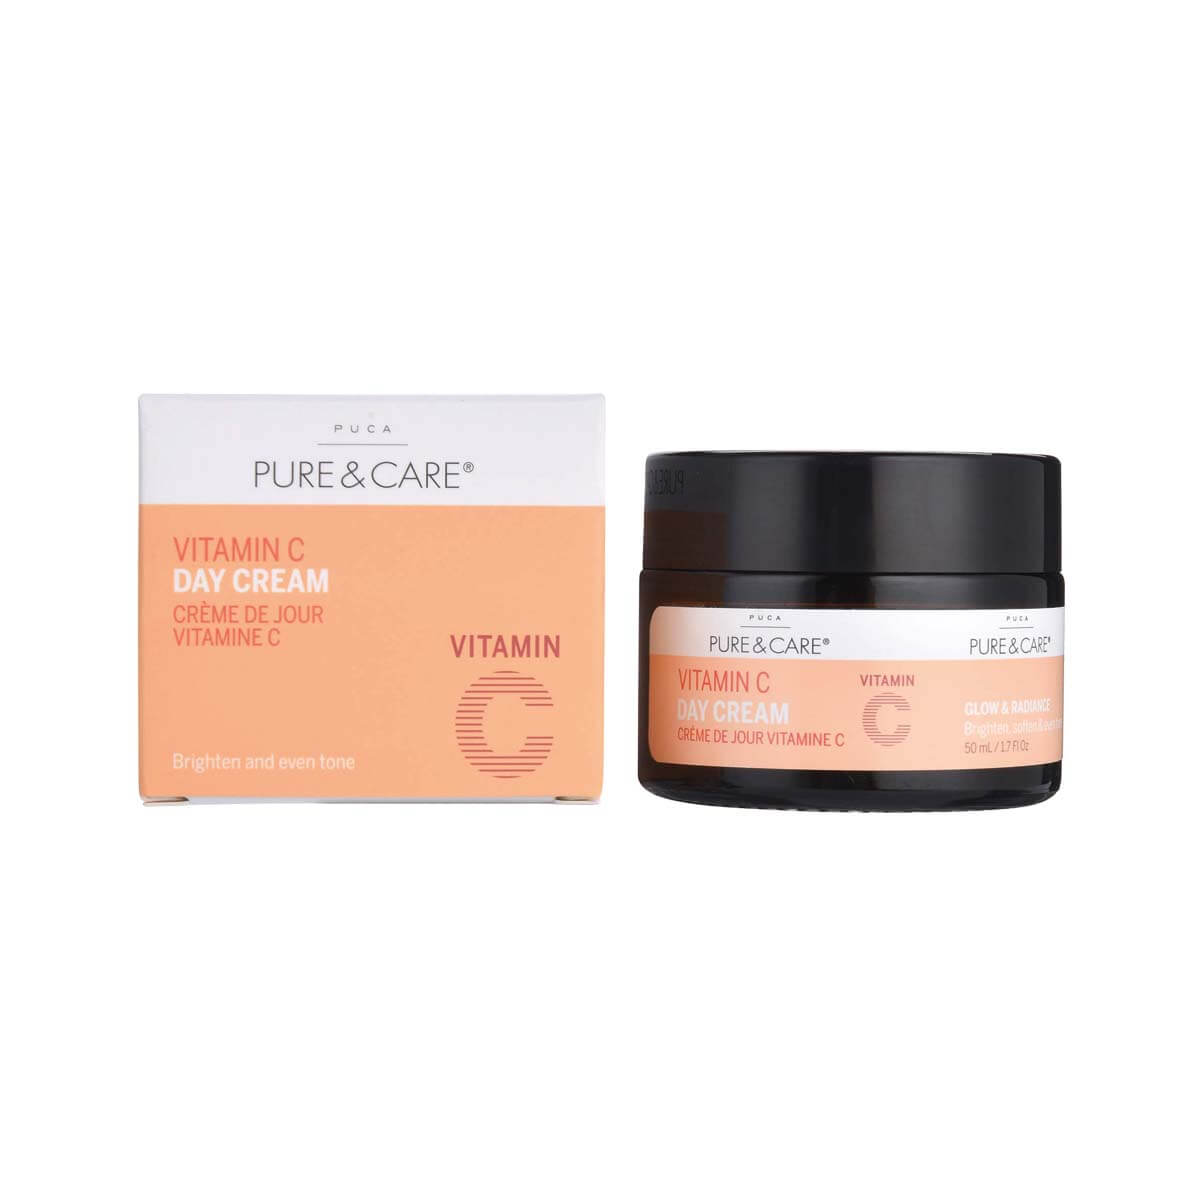 Vitamin C Day Cream | PUCA - PURE & CARE